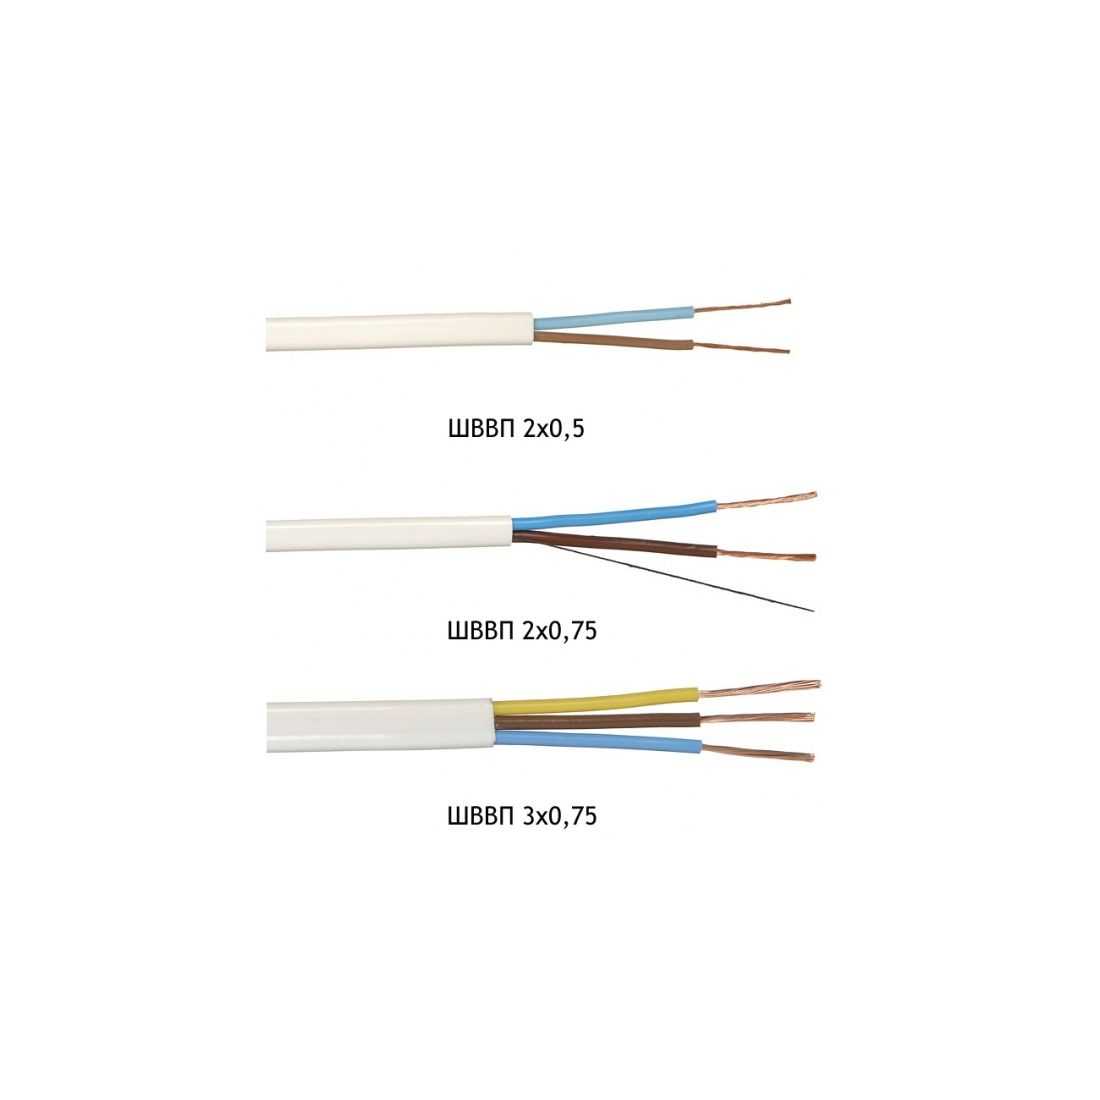 Шввп - расшифровка кабеля, характеристики и применение провода шввп